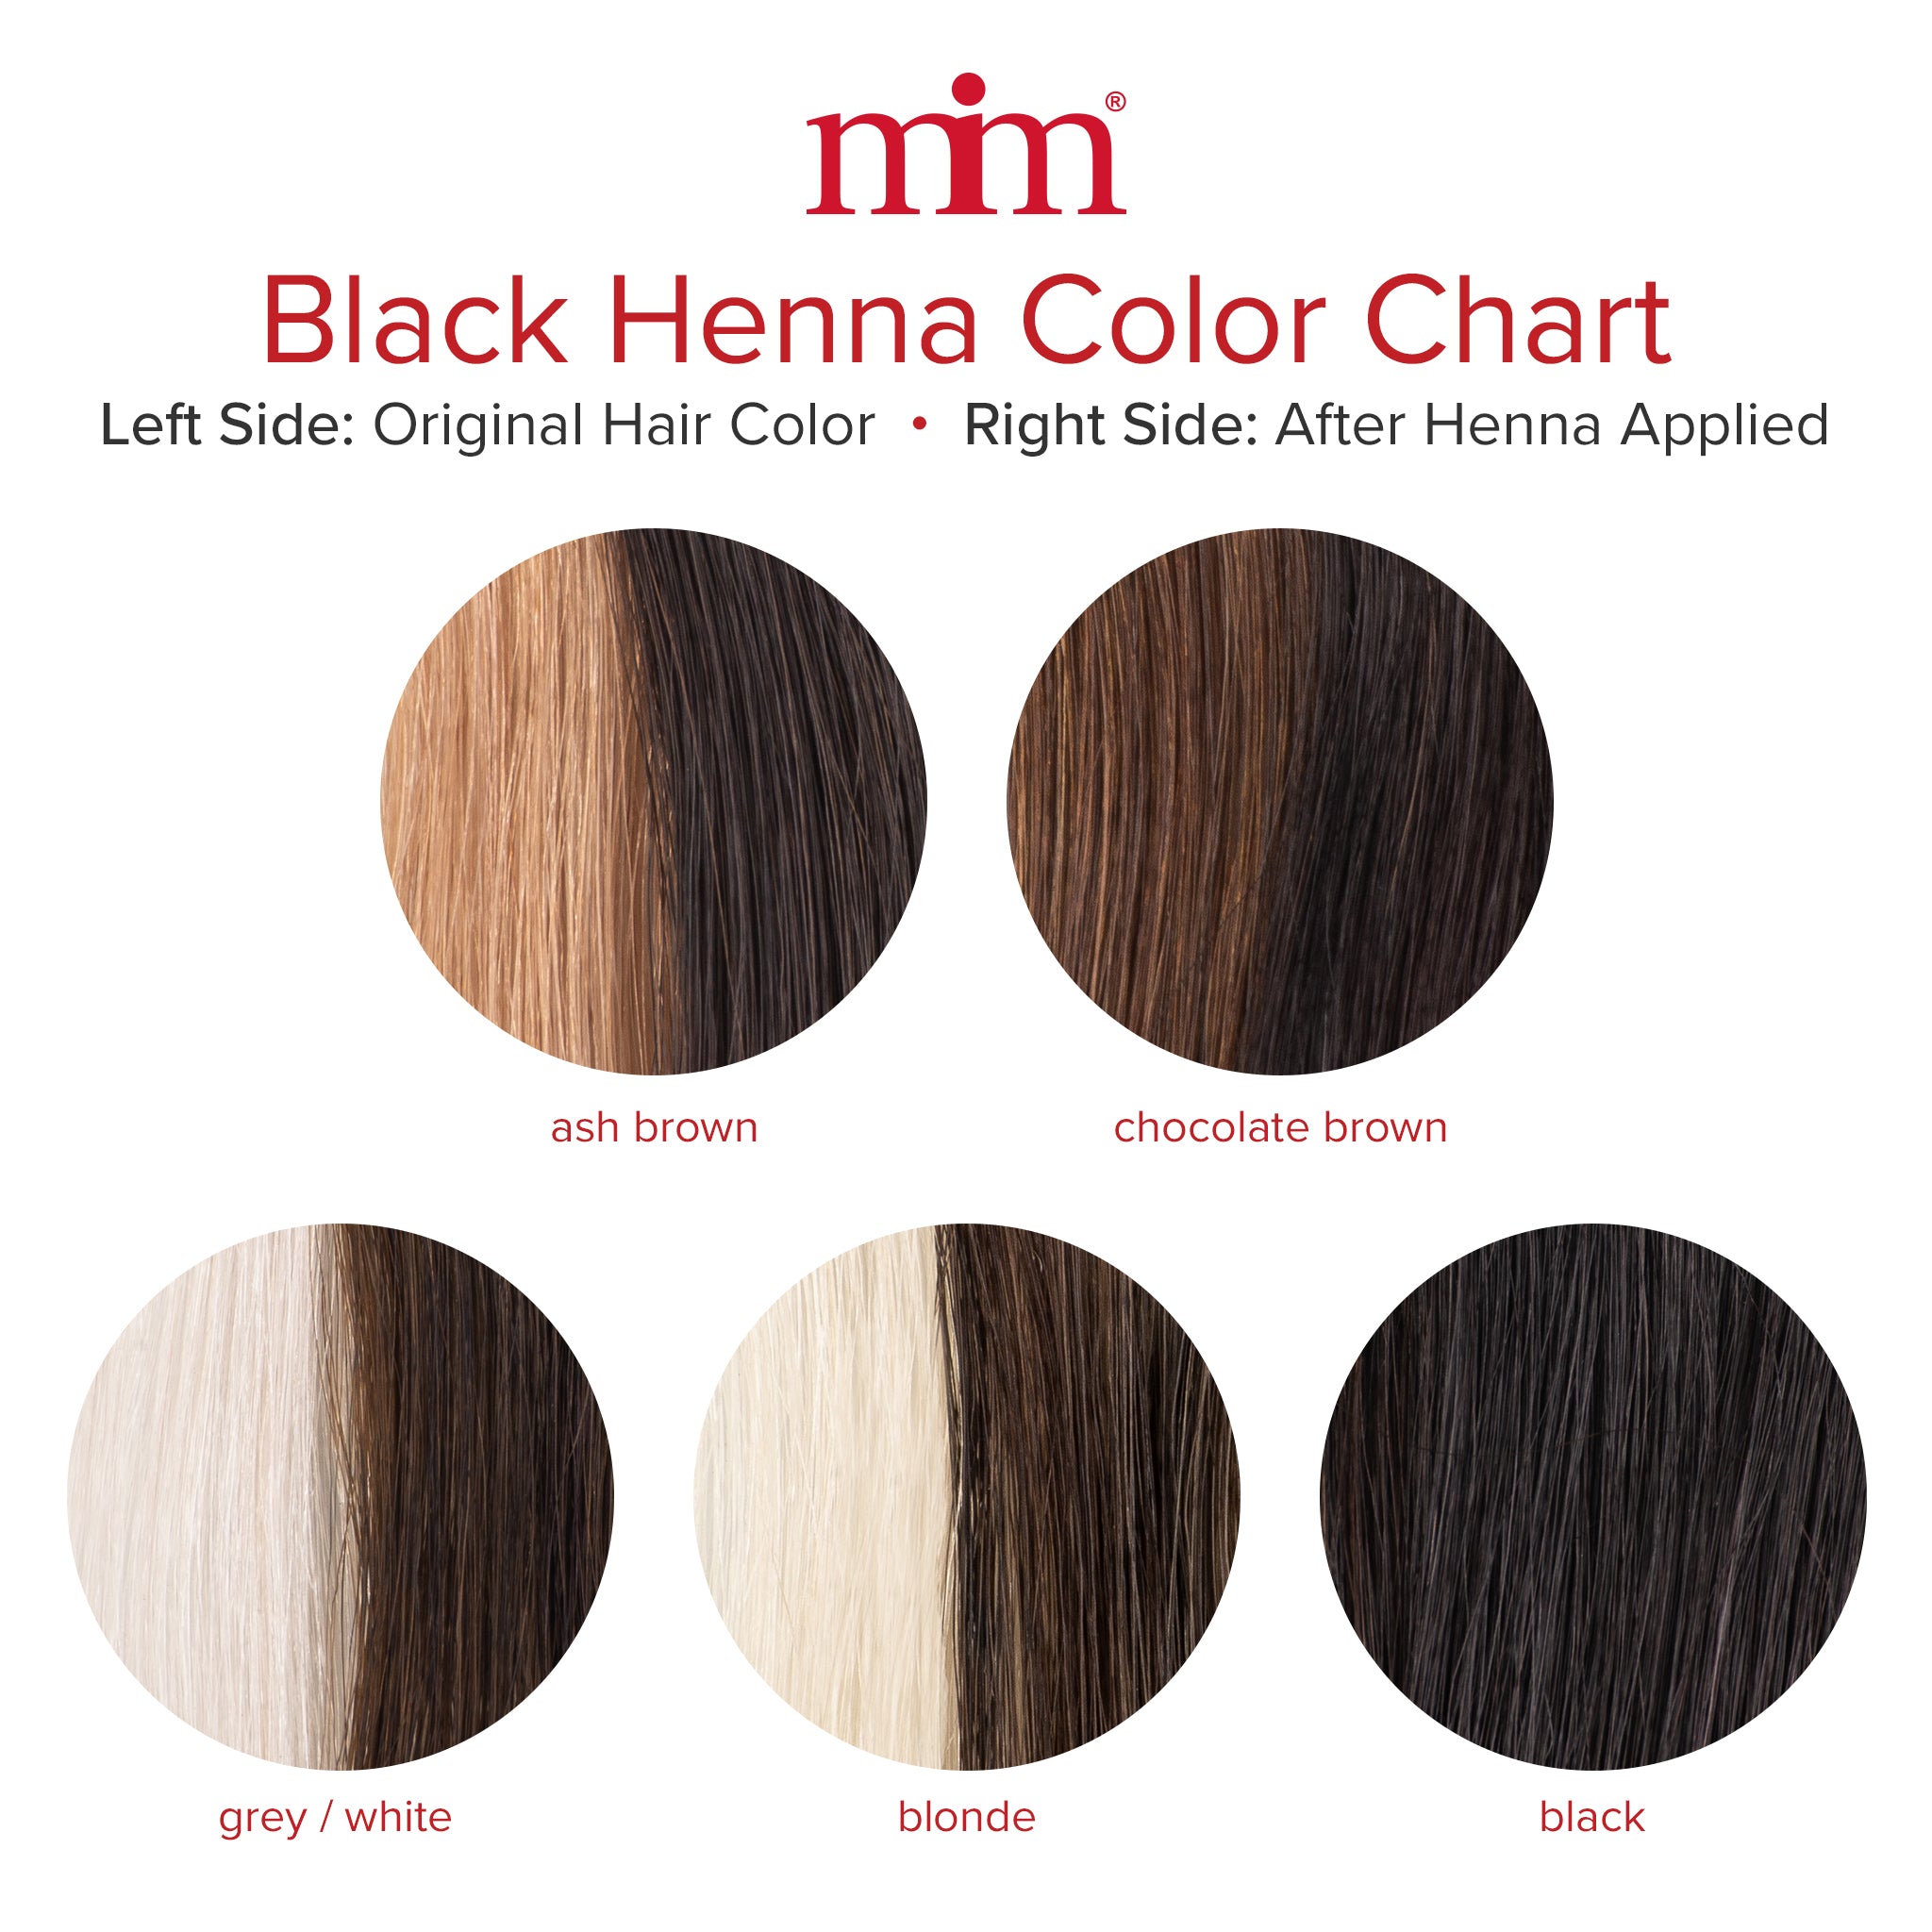 Banjara's Black Henna Herbal creme Hair Color - YouTube